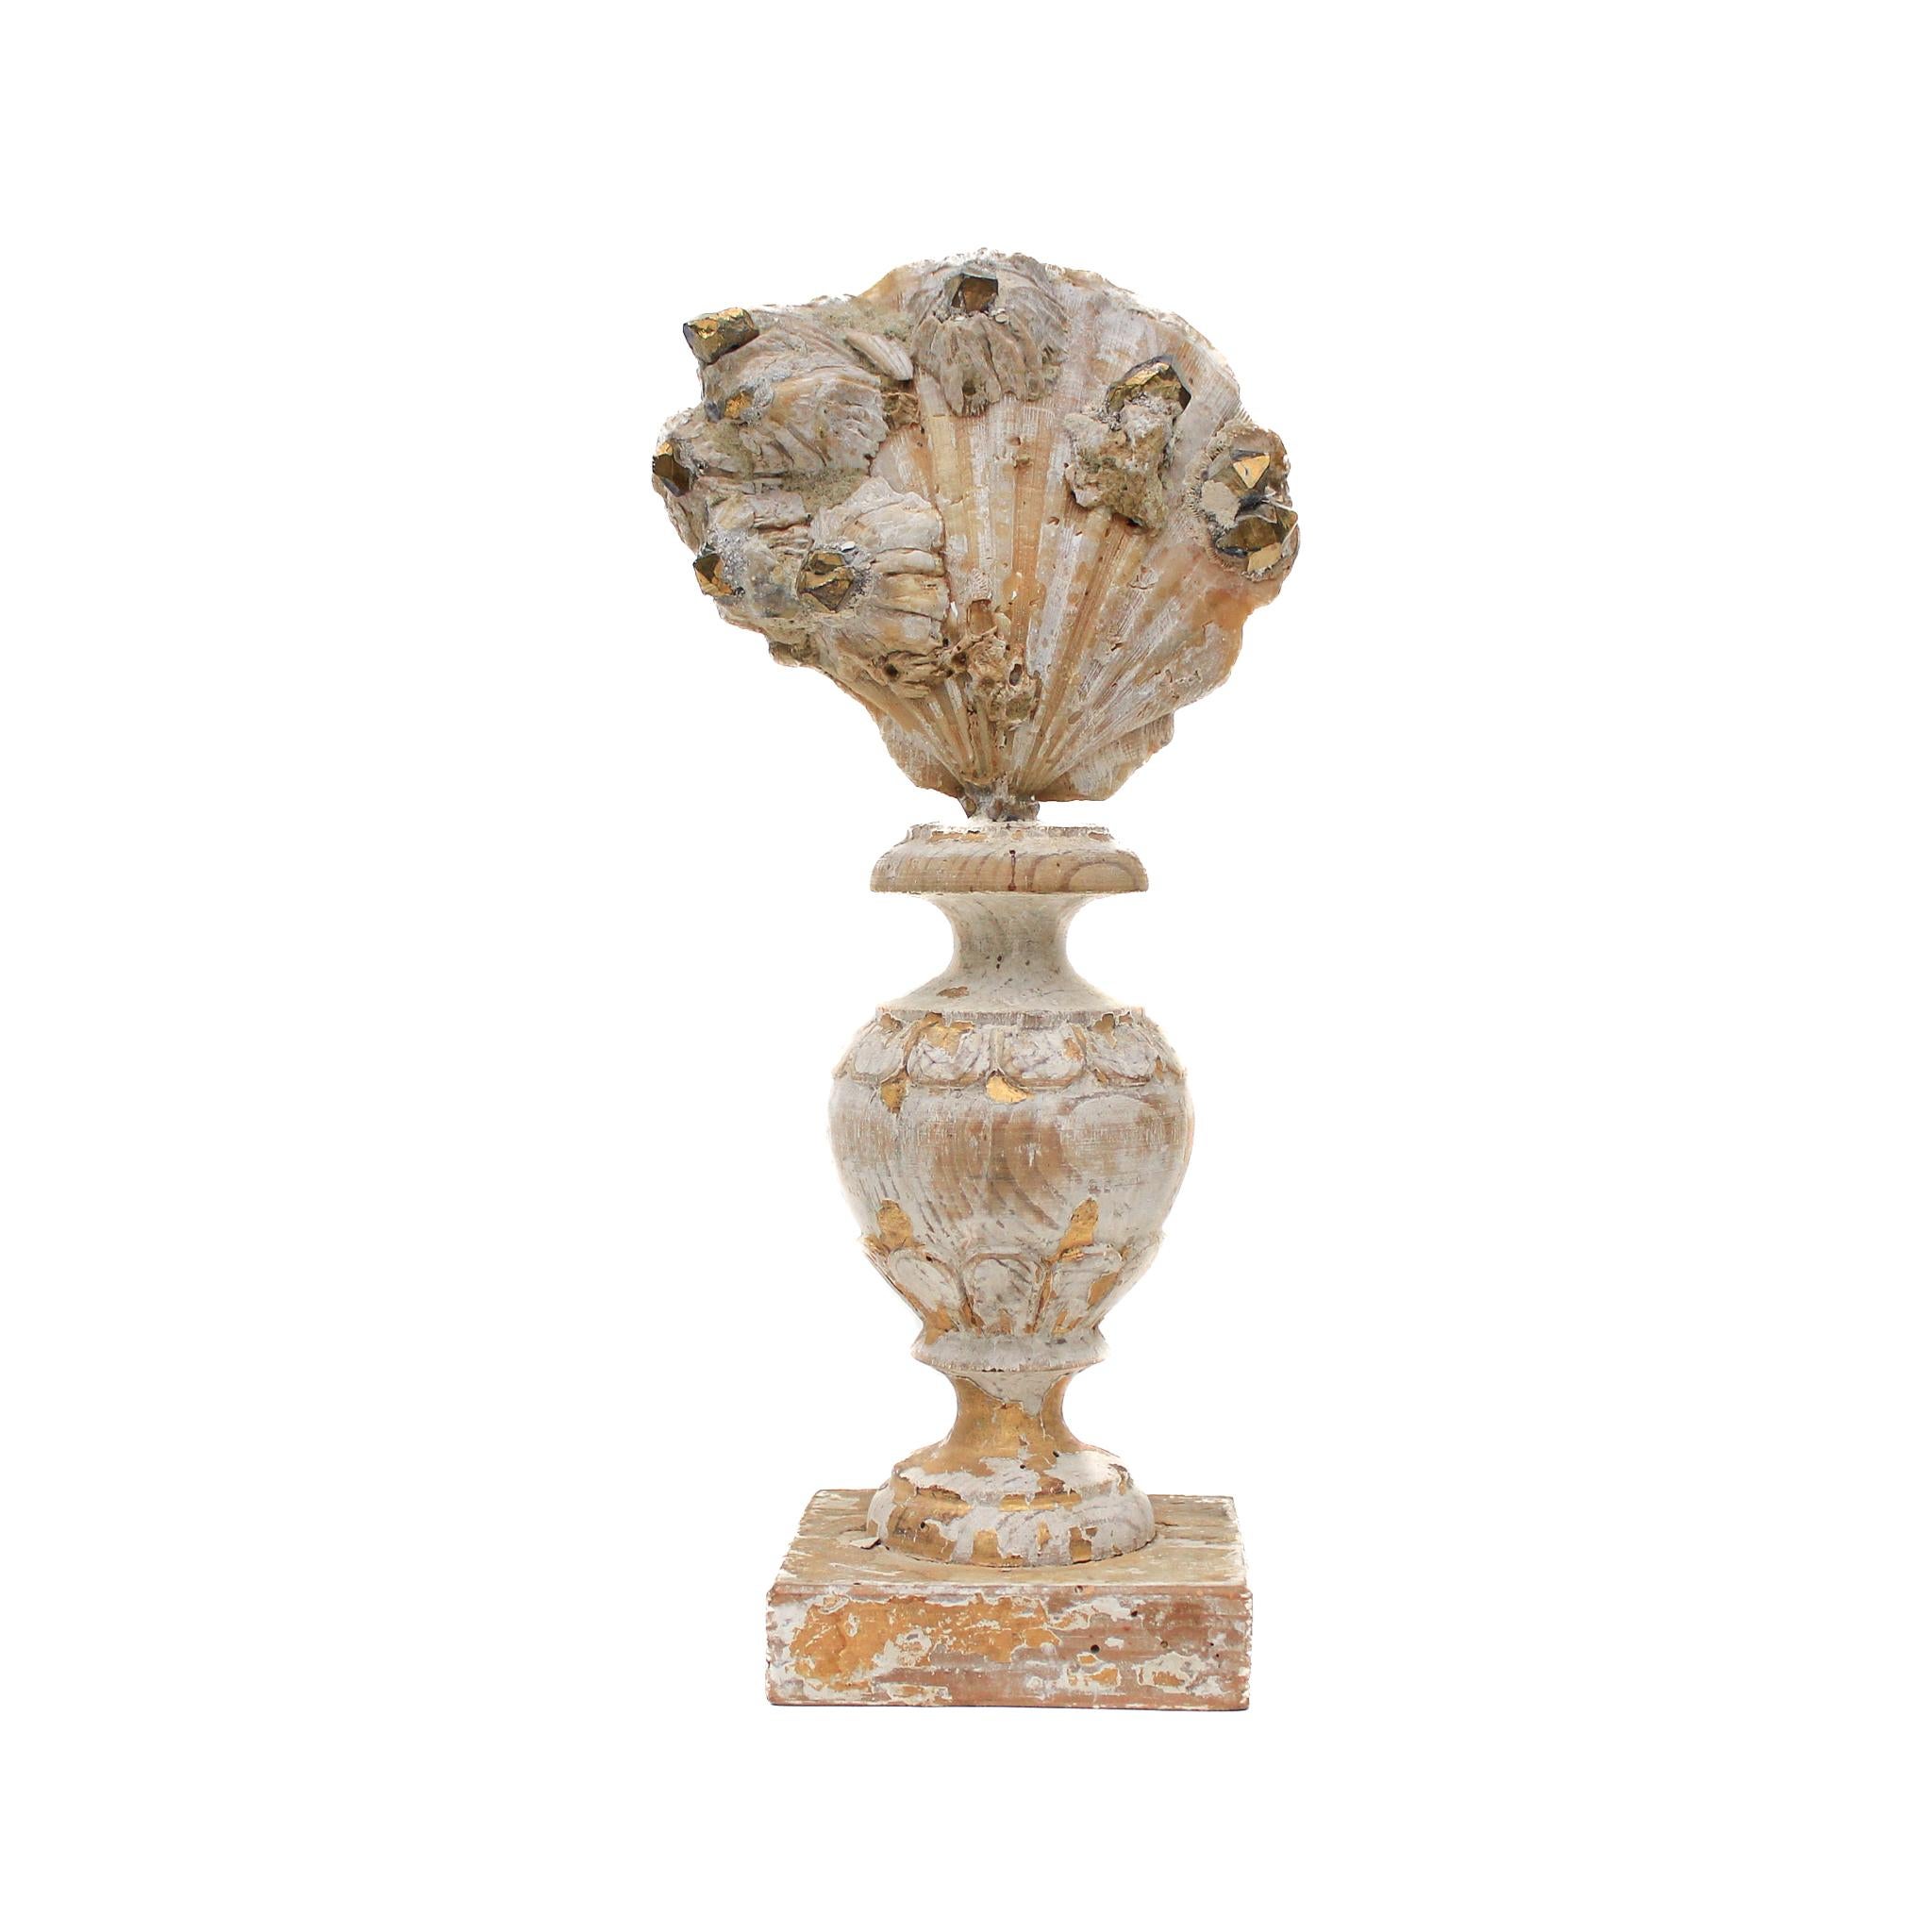 italienische Vase aus dem 17. Jahrhundert mit einer Chesapecten-Muschel und vergoldeten Kristallspitzen.

Dieses Fragment stammt aus einer Kirche in Florenz. Es wurde gefunden und vor dem historischen Hochwasser des Arno im Jahr 1966